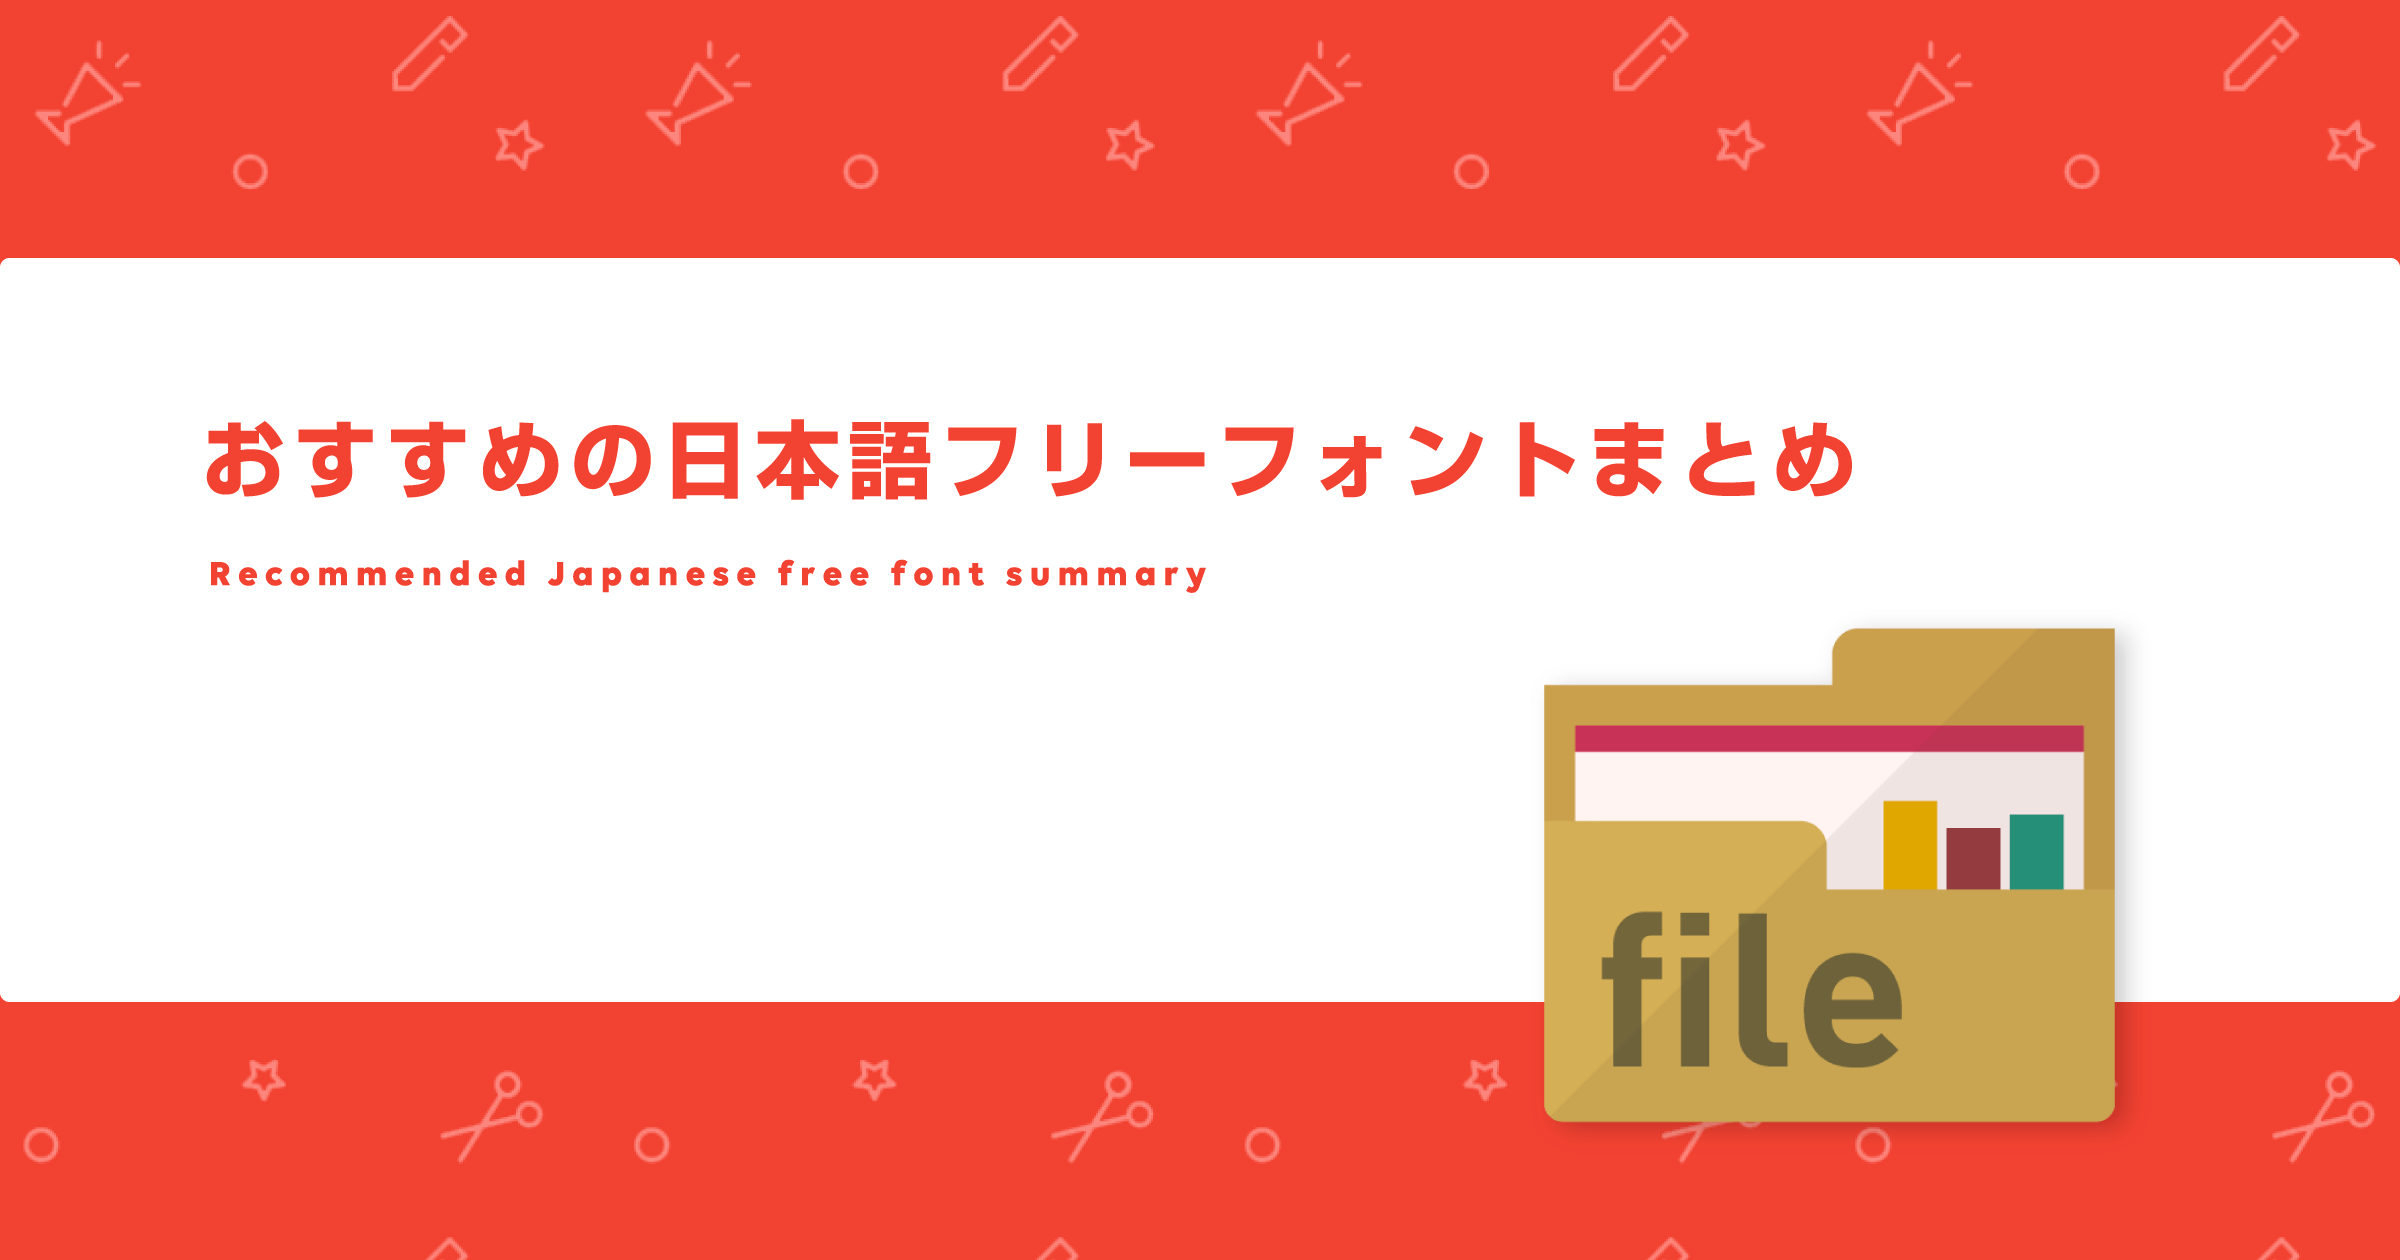 同人誌制作に使える おすすめの日本語フリーフォントまとめ Fare ファーレ 同人作家のための つくる を支えるwebメディア